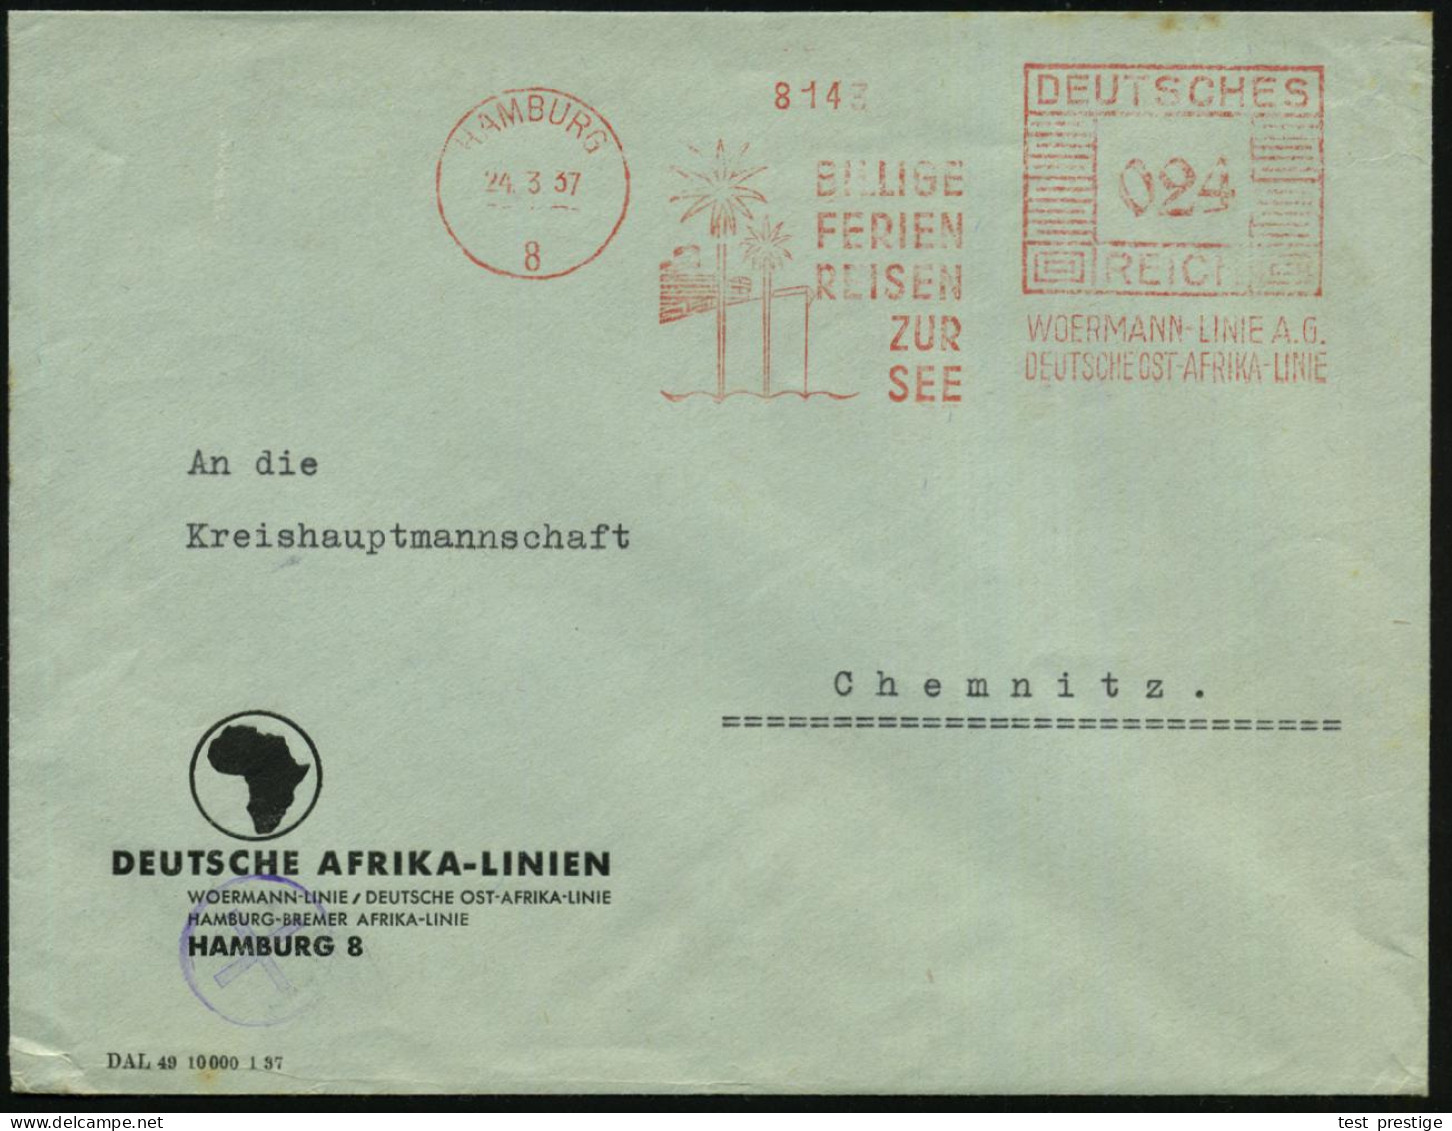 HAMBURG/ 8/ BILLIGE/ FERIEN/ REISEN/ ZUR/ SEE/ WOERMANN-LINIE AG/ DT.AFRIKA-LINIE 1937 (24.3.) AFS Francotyp = Palmen Vo - Marítimo